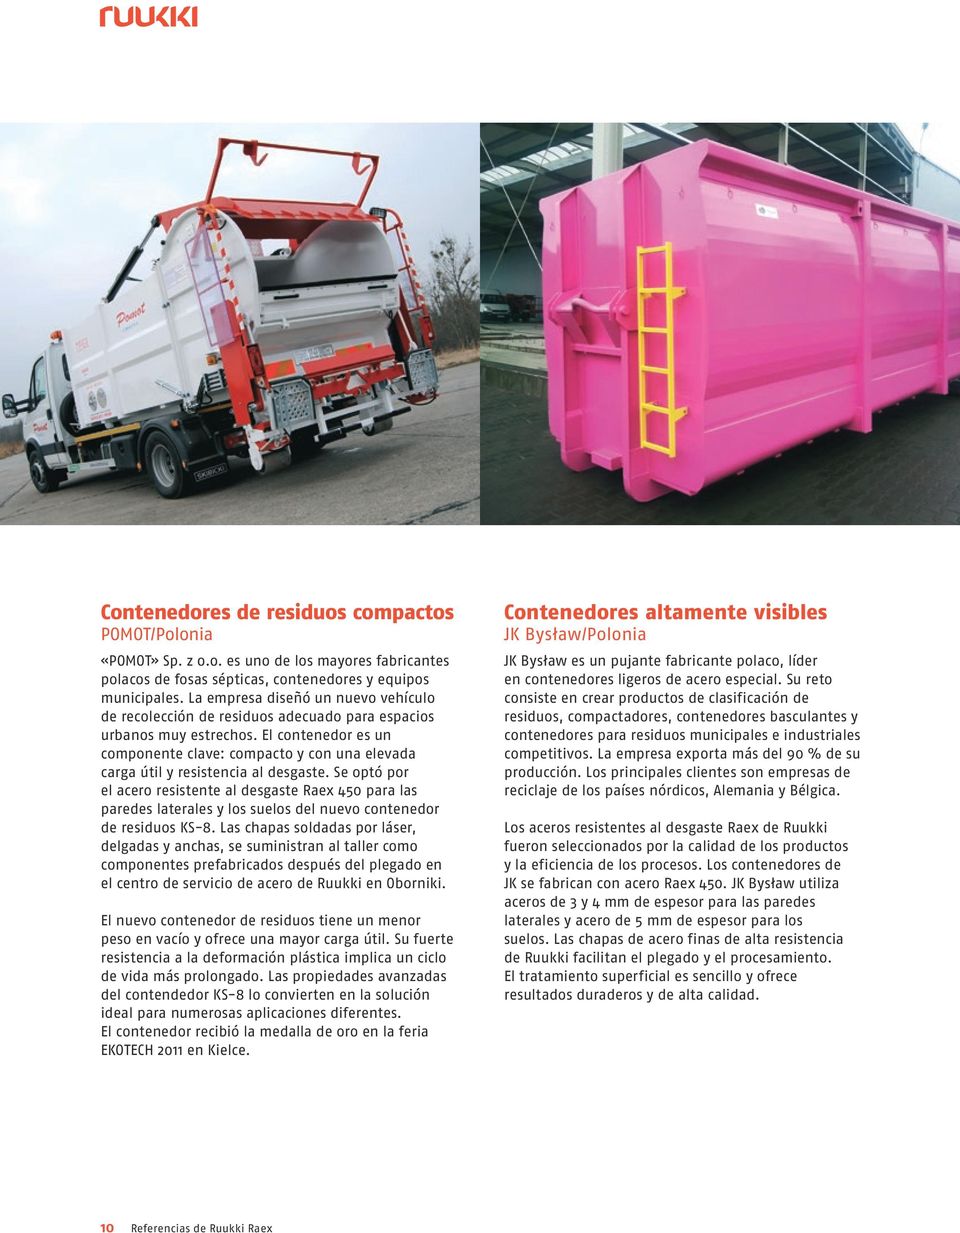 El contenedor es un componente clave: compacto y con una elevada carga útil y resistencia al desgaste.